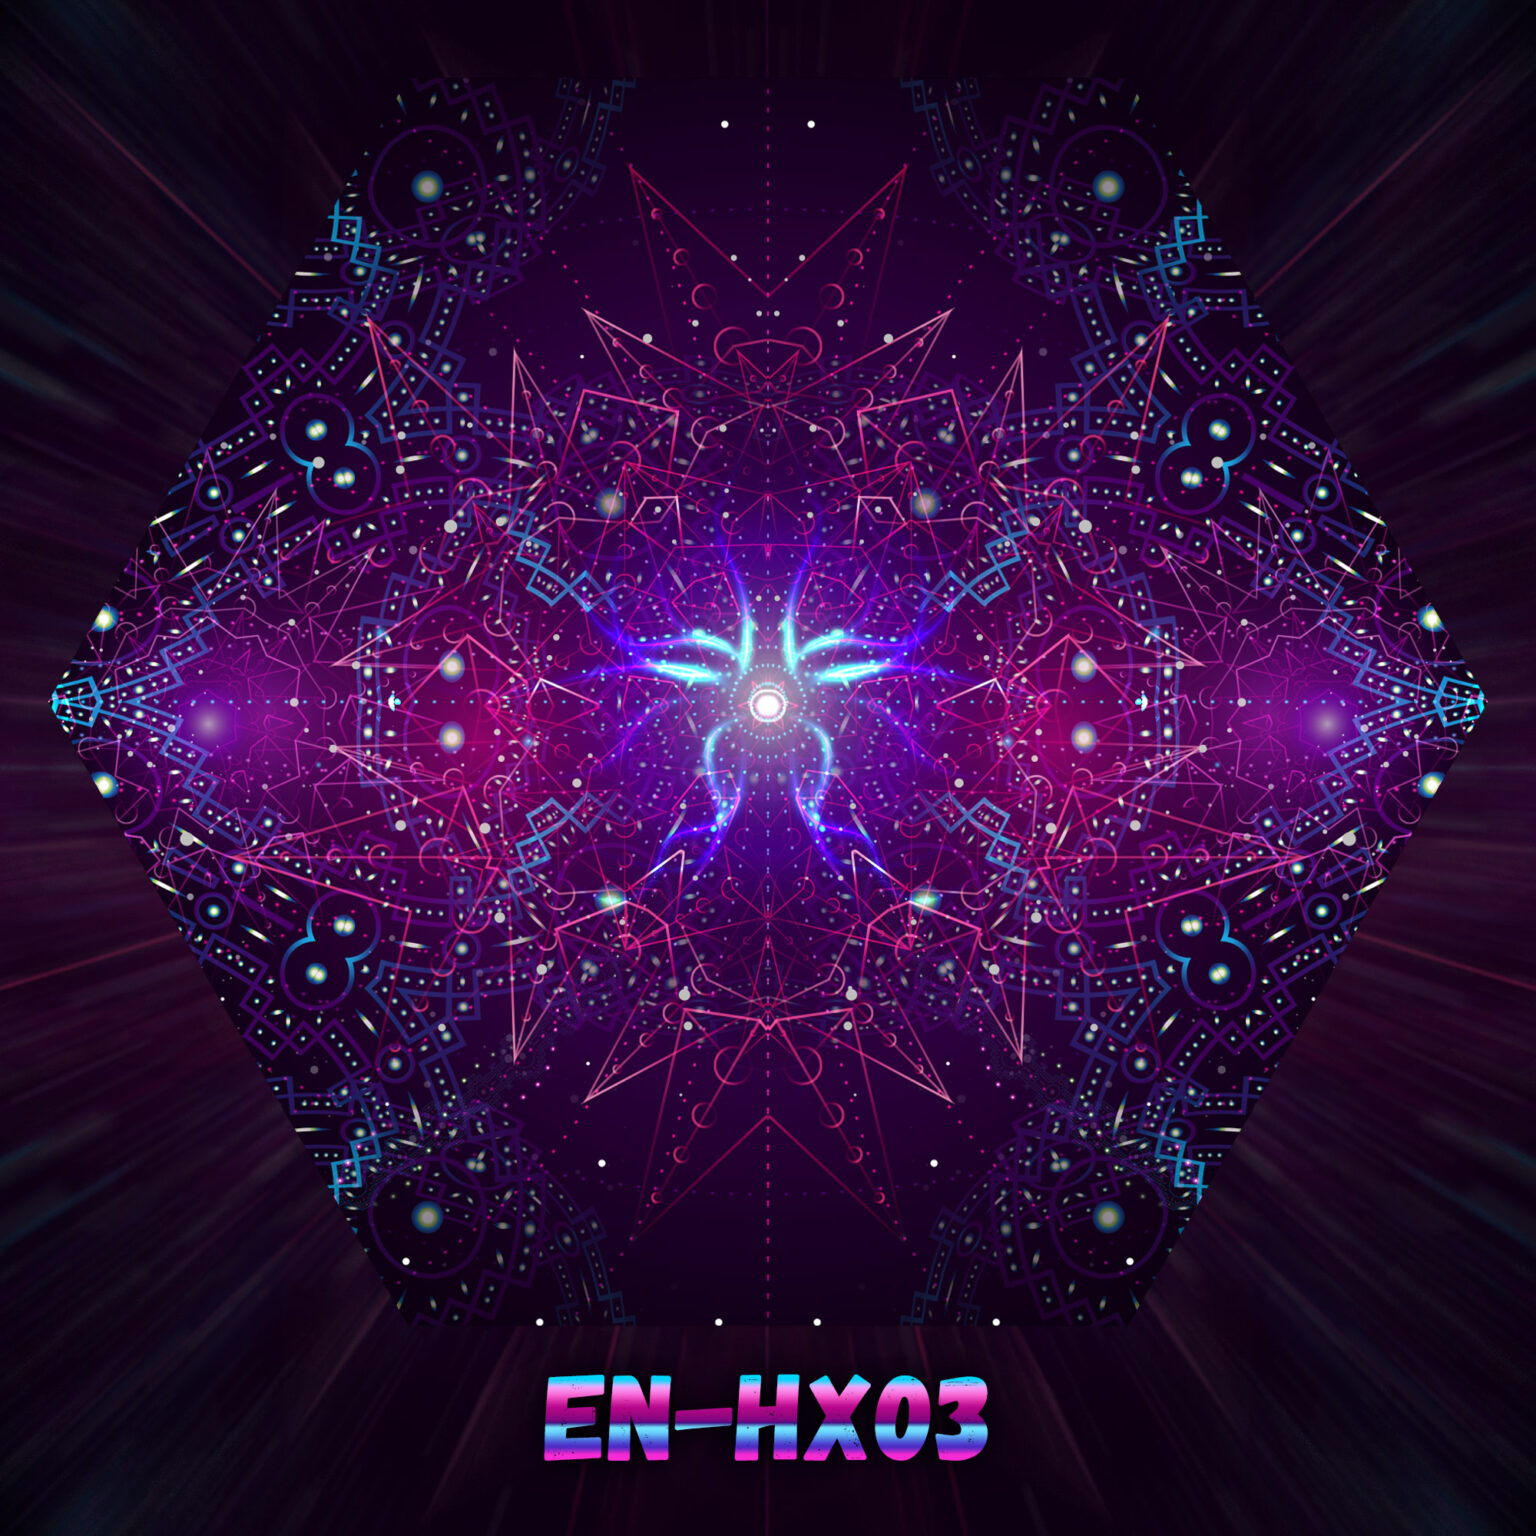 EN-HX03 - Enlightenment - UV-Hexagon - Design Preview